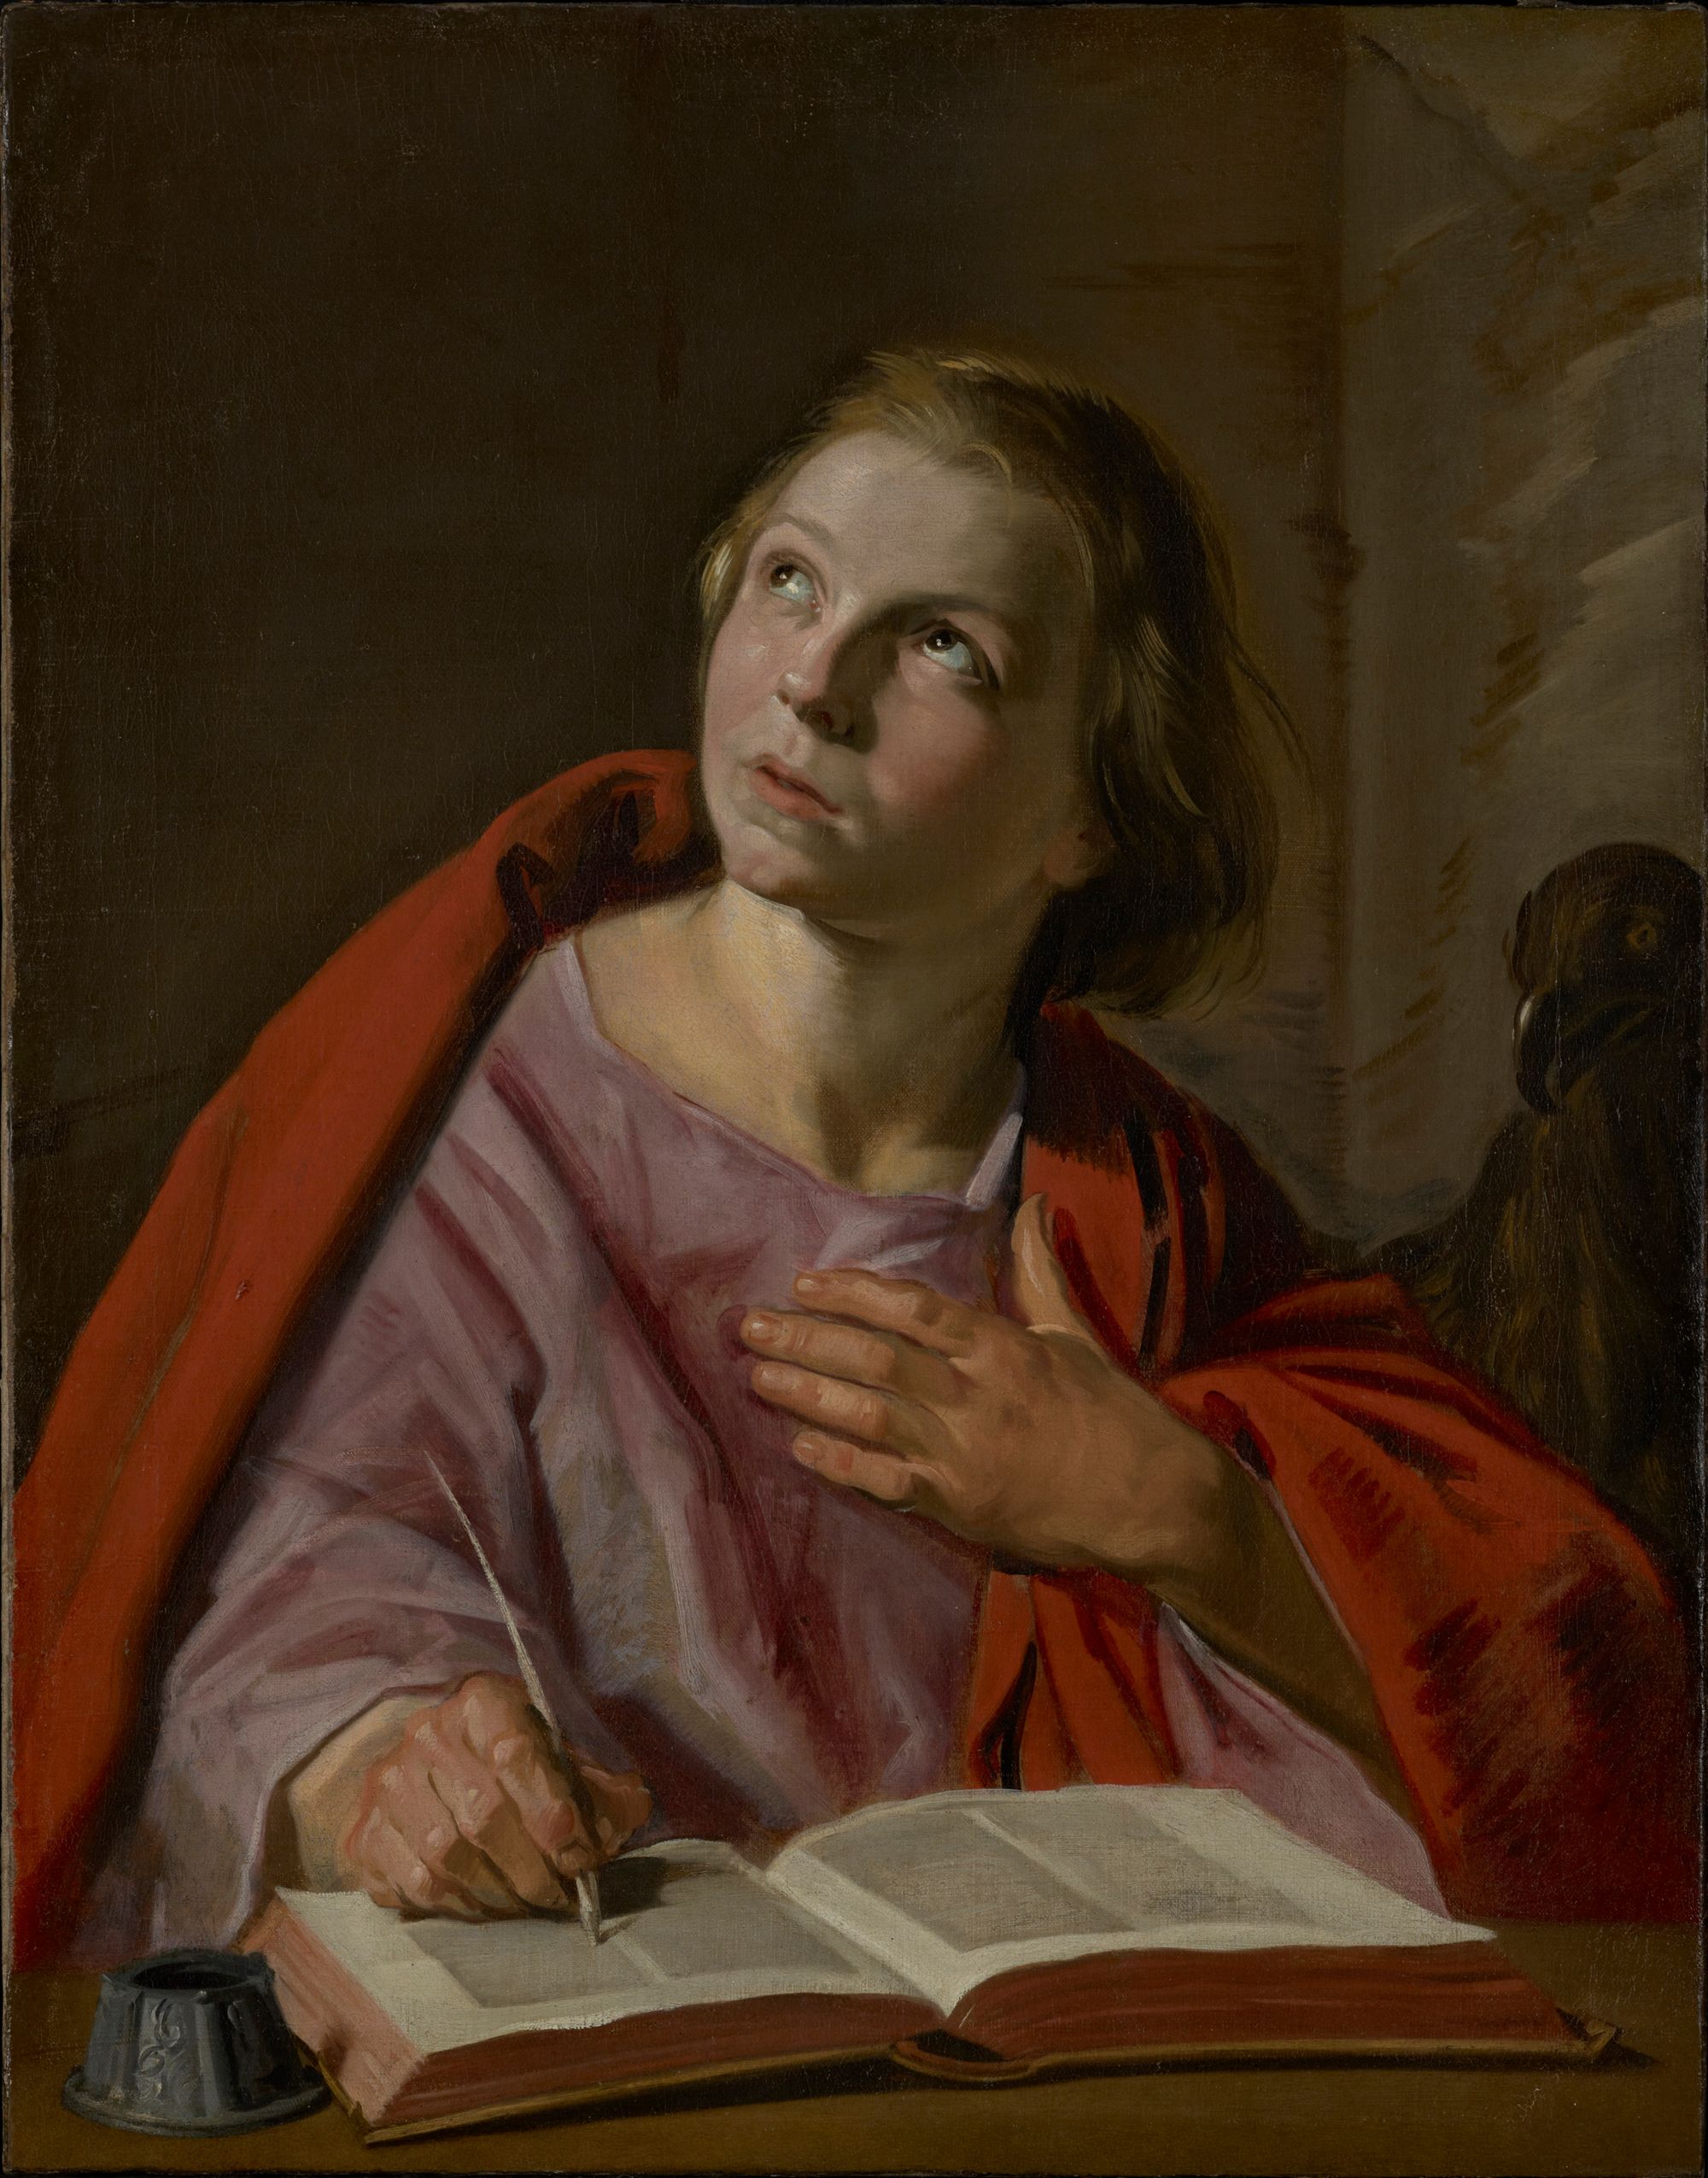 Saint John the Evangelist by Frans Hals (1625-1628) - Public Domain Catholic Painting